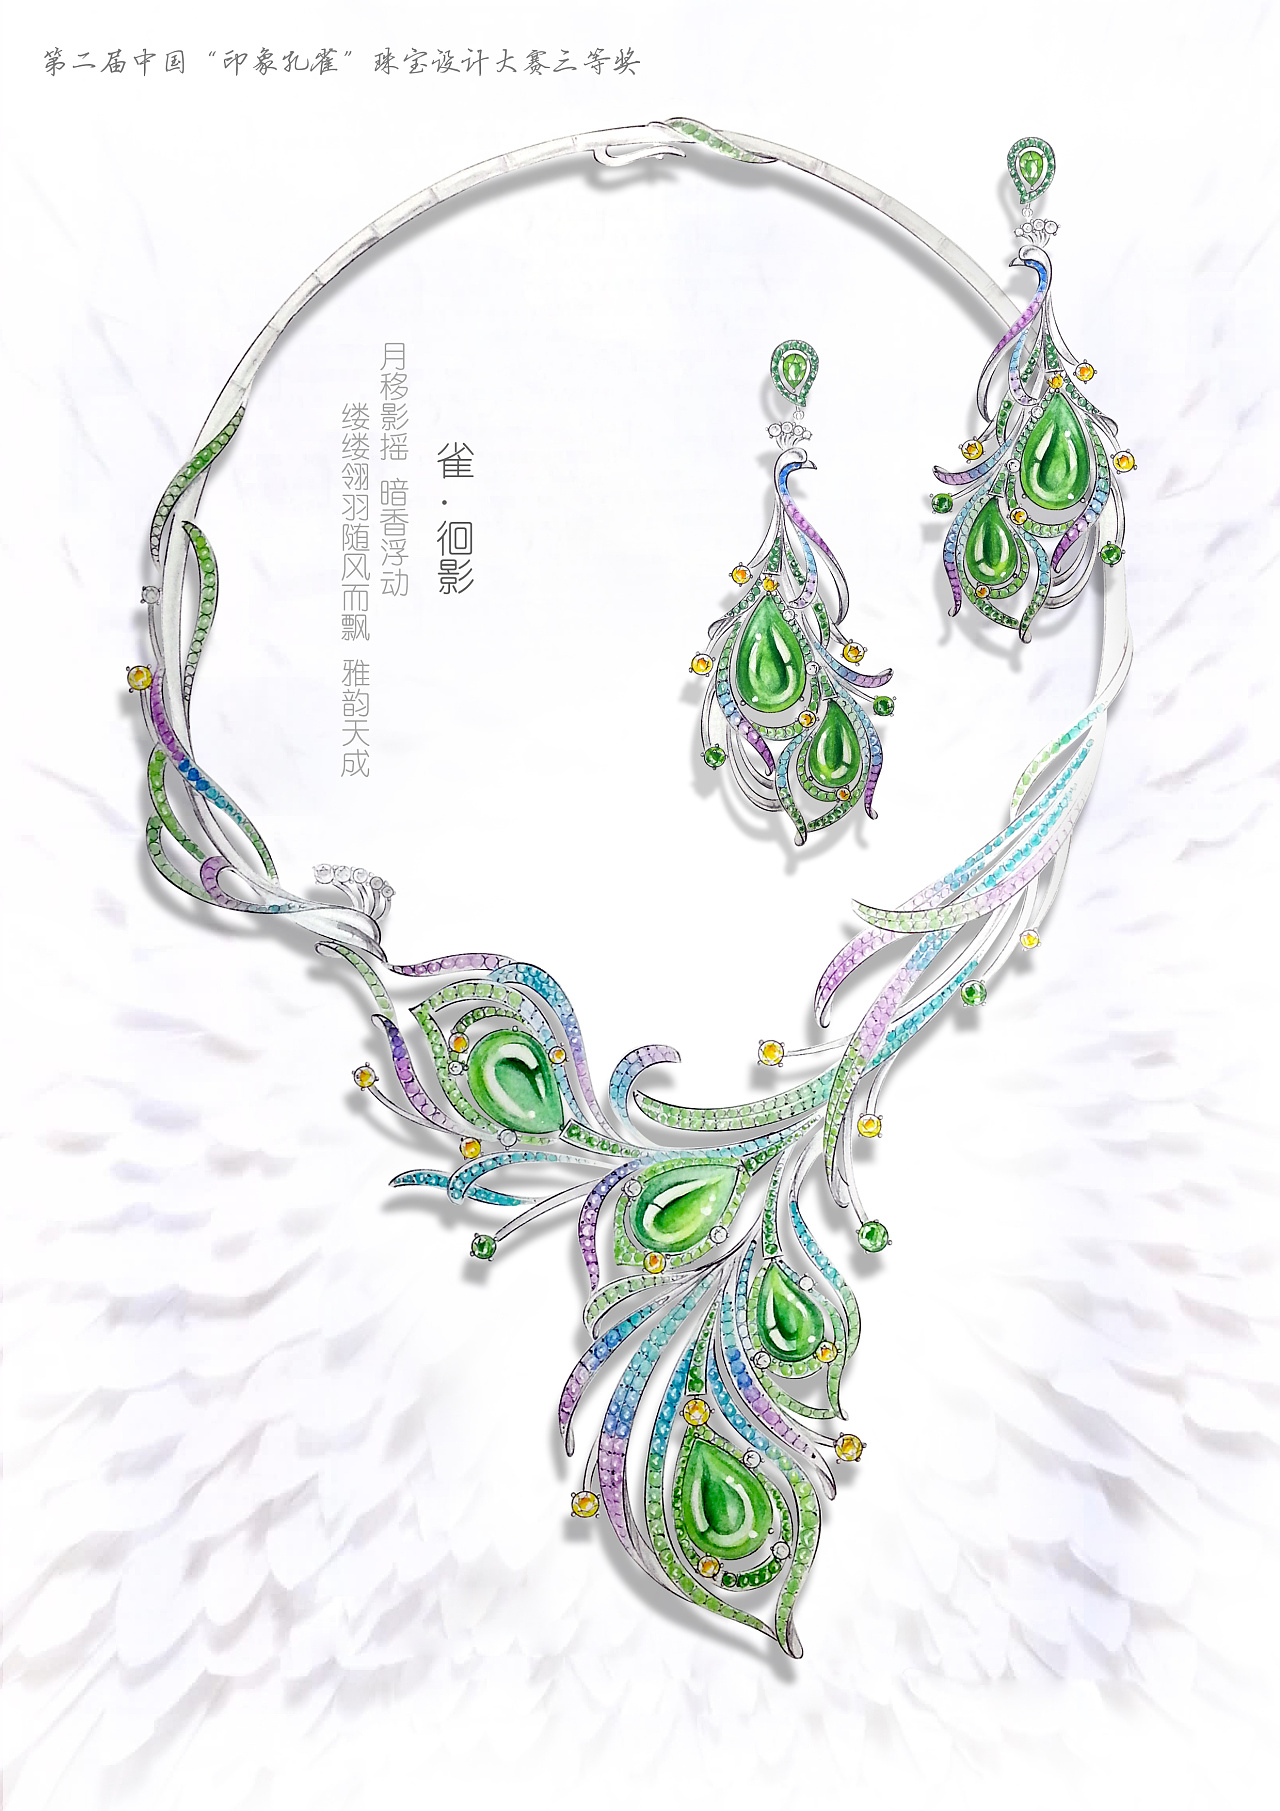 第二届中国珠宝七彩云南印象孔雀设计大赛雀徊影